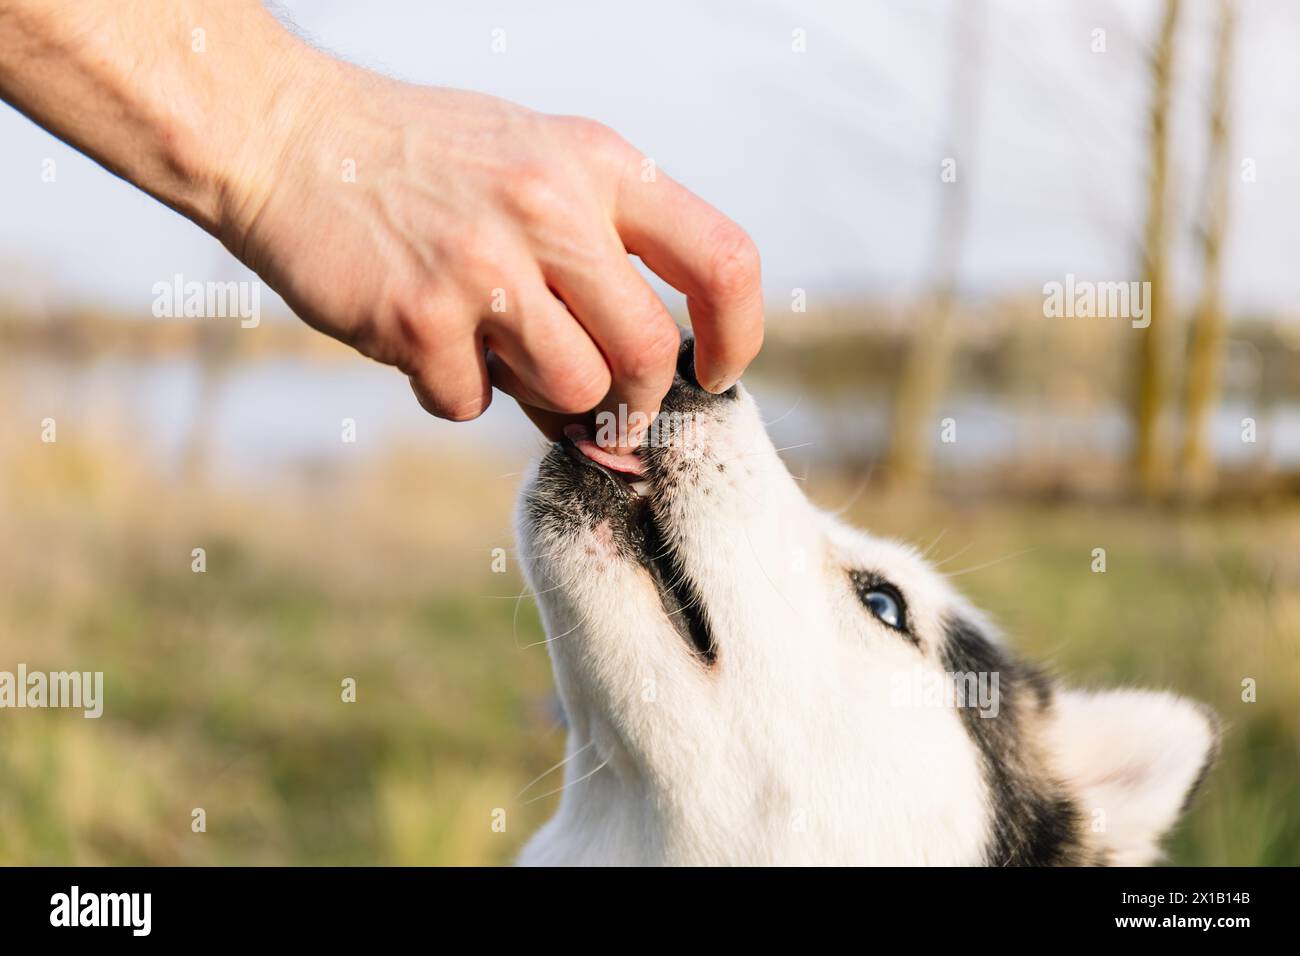 Foto orizzontale un primo piano di un bravo Husky siberiano che riceve un trattamento delicato dalla mano del proprietario, rafforzando il comportamento positivo Foto Stock